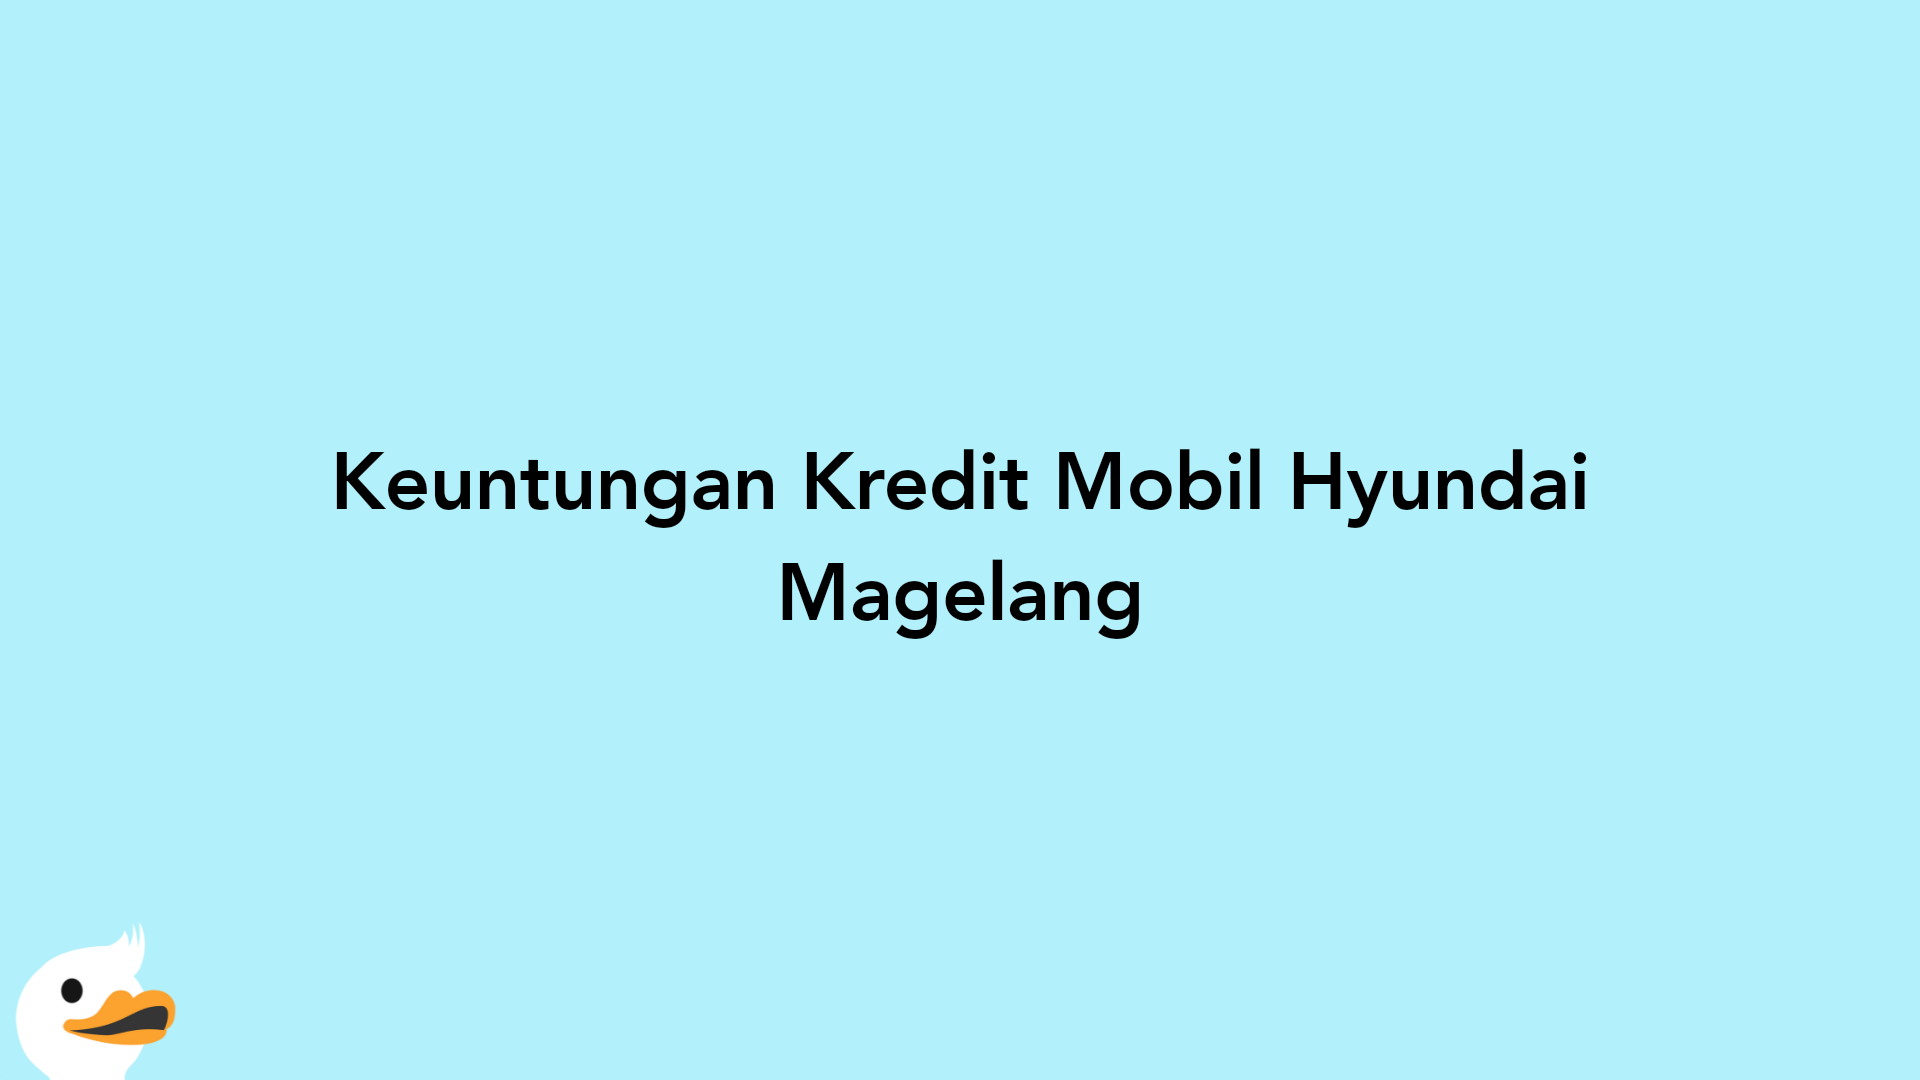 Keuntungan Kredit Mobil Hyundai Magelang